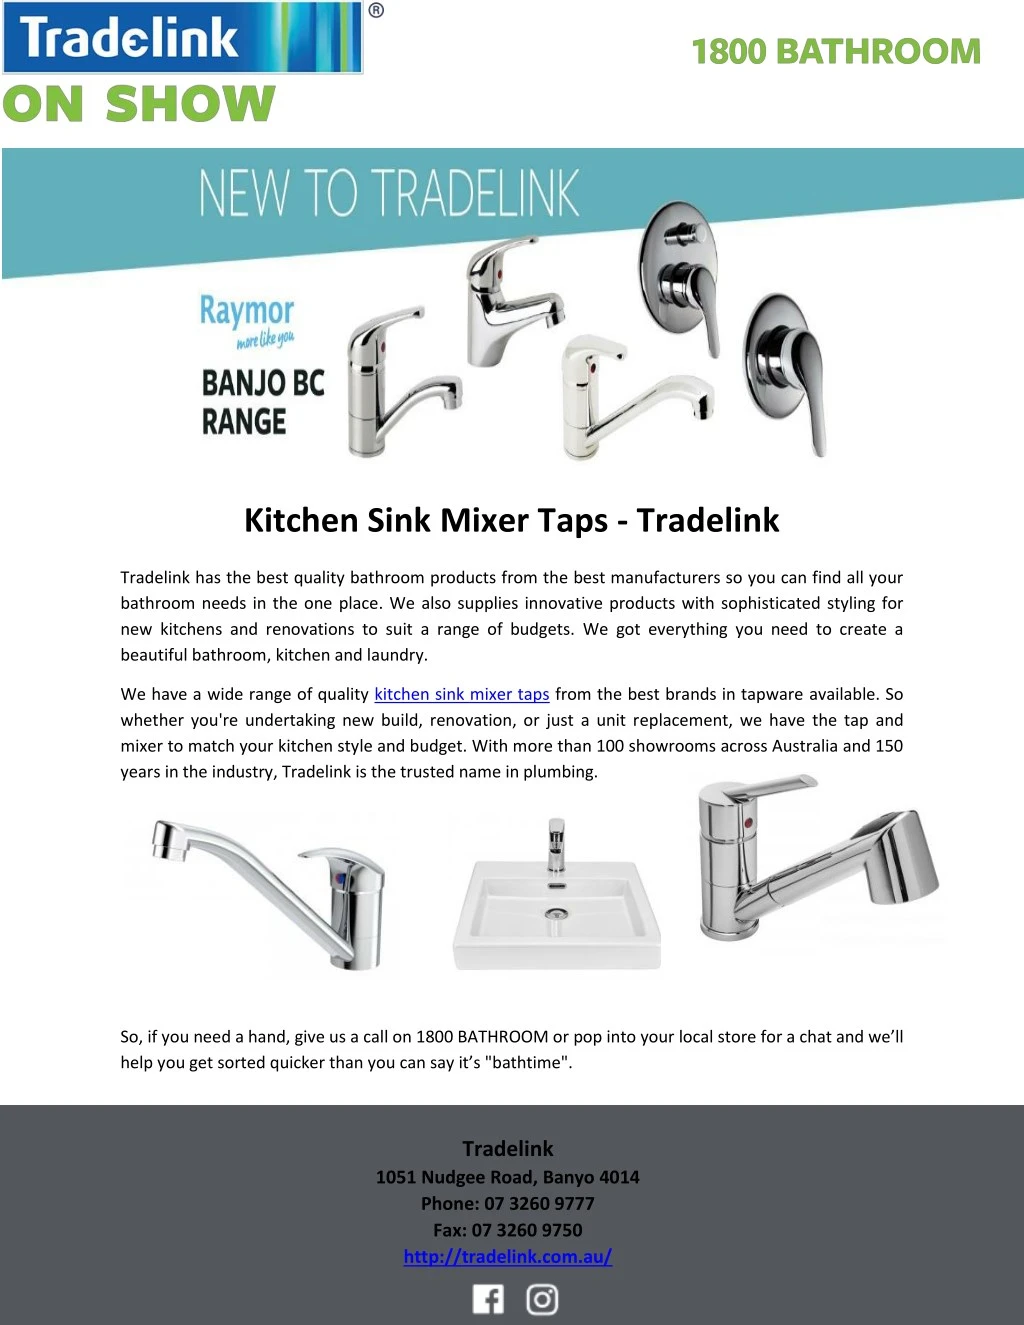 kitchen sink mixer taps tradelink